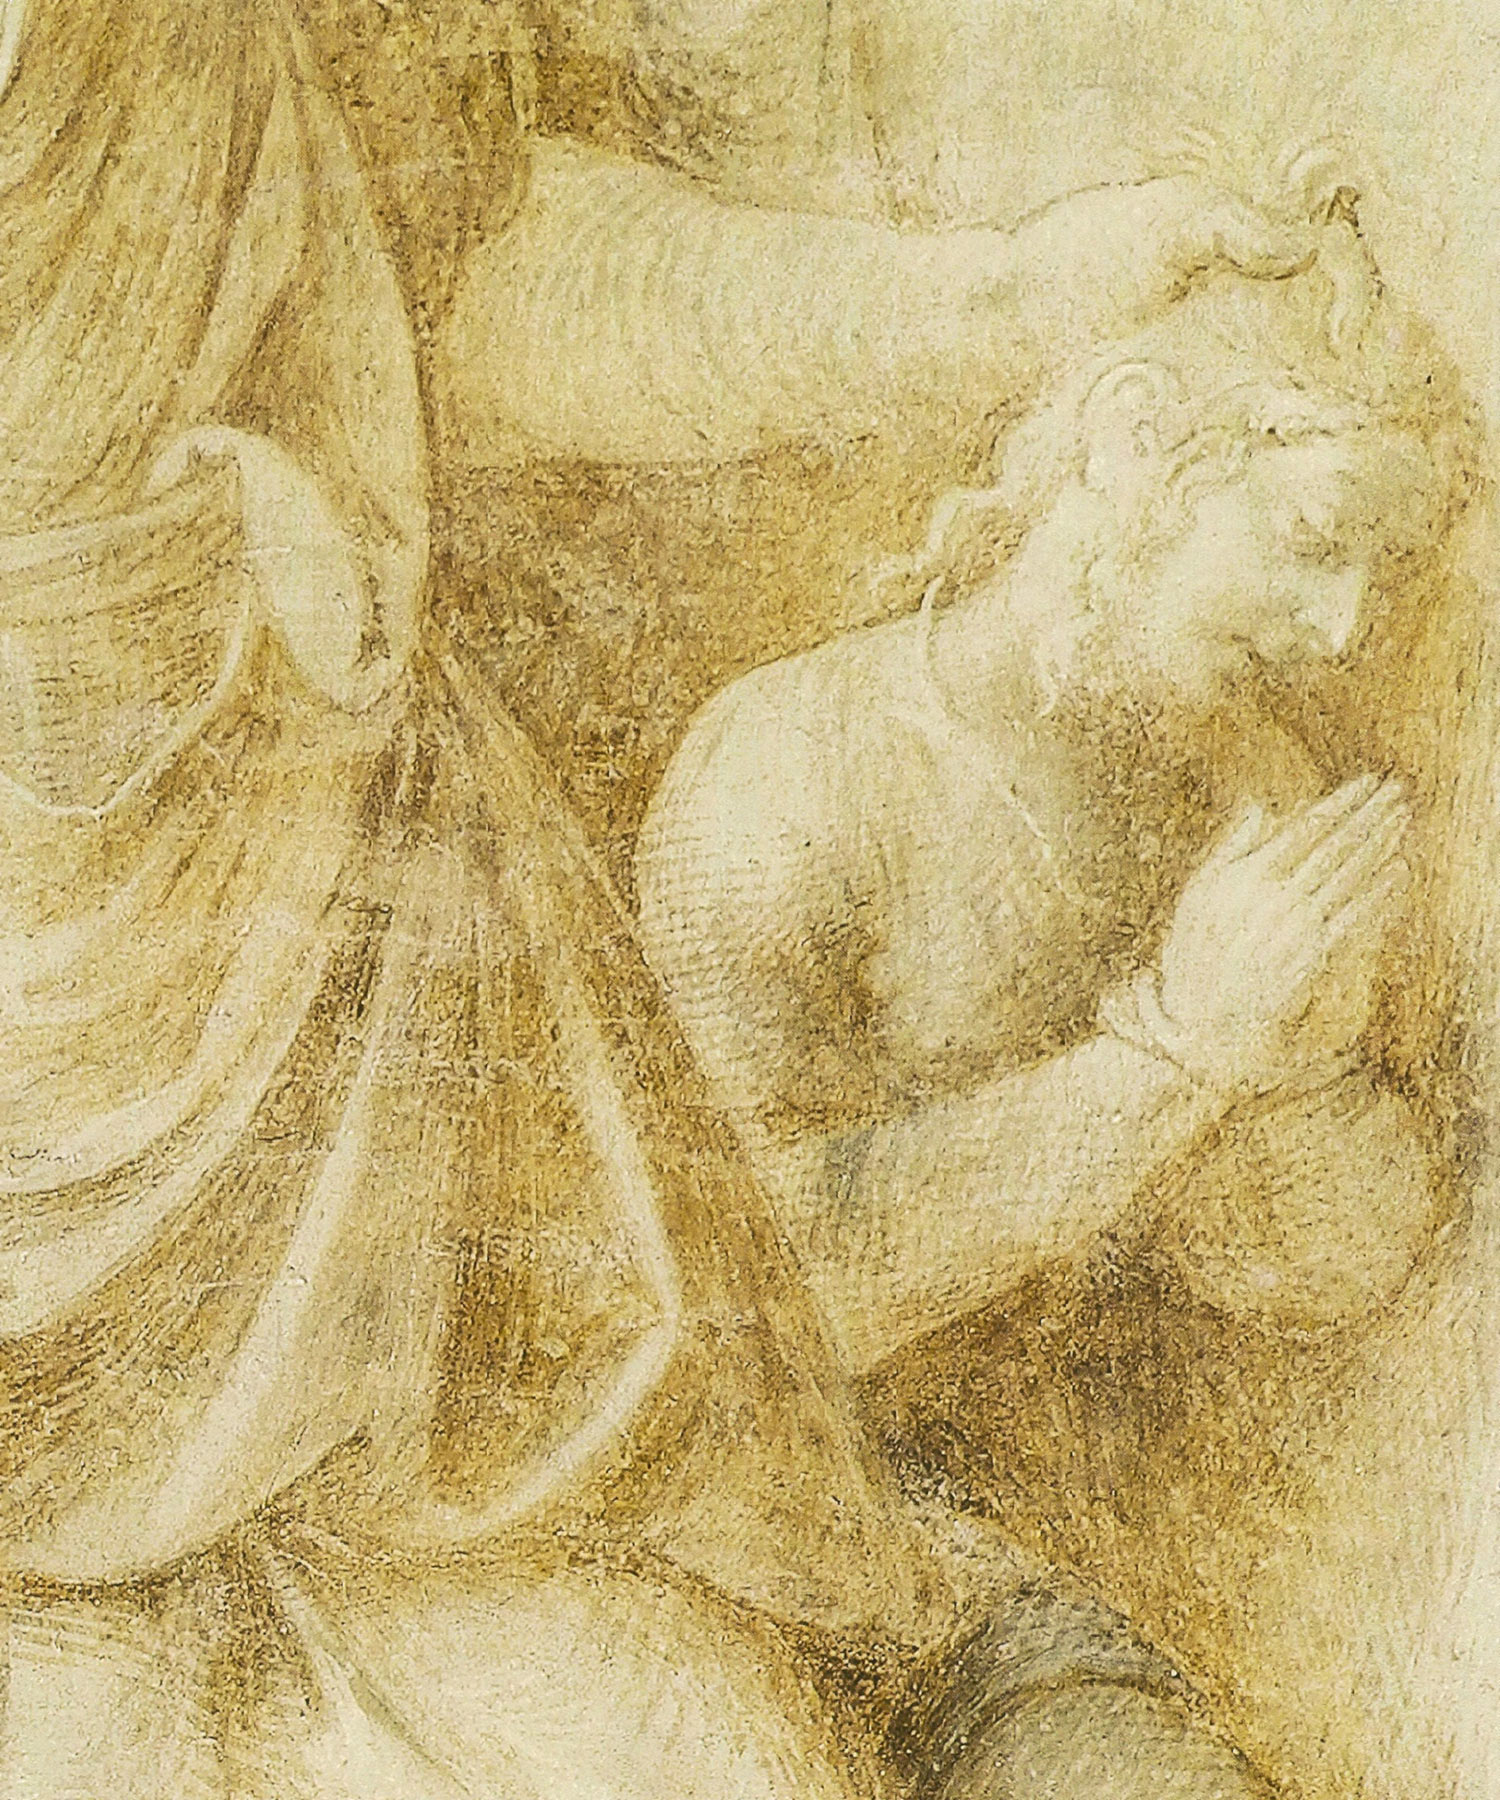 Particolare del sacrificio di Isacco. Qui l'inconfondibile mano del Correggio appare nell'inesausto tratteggio.
